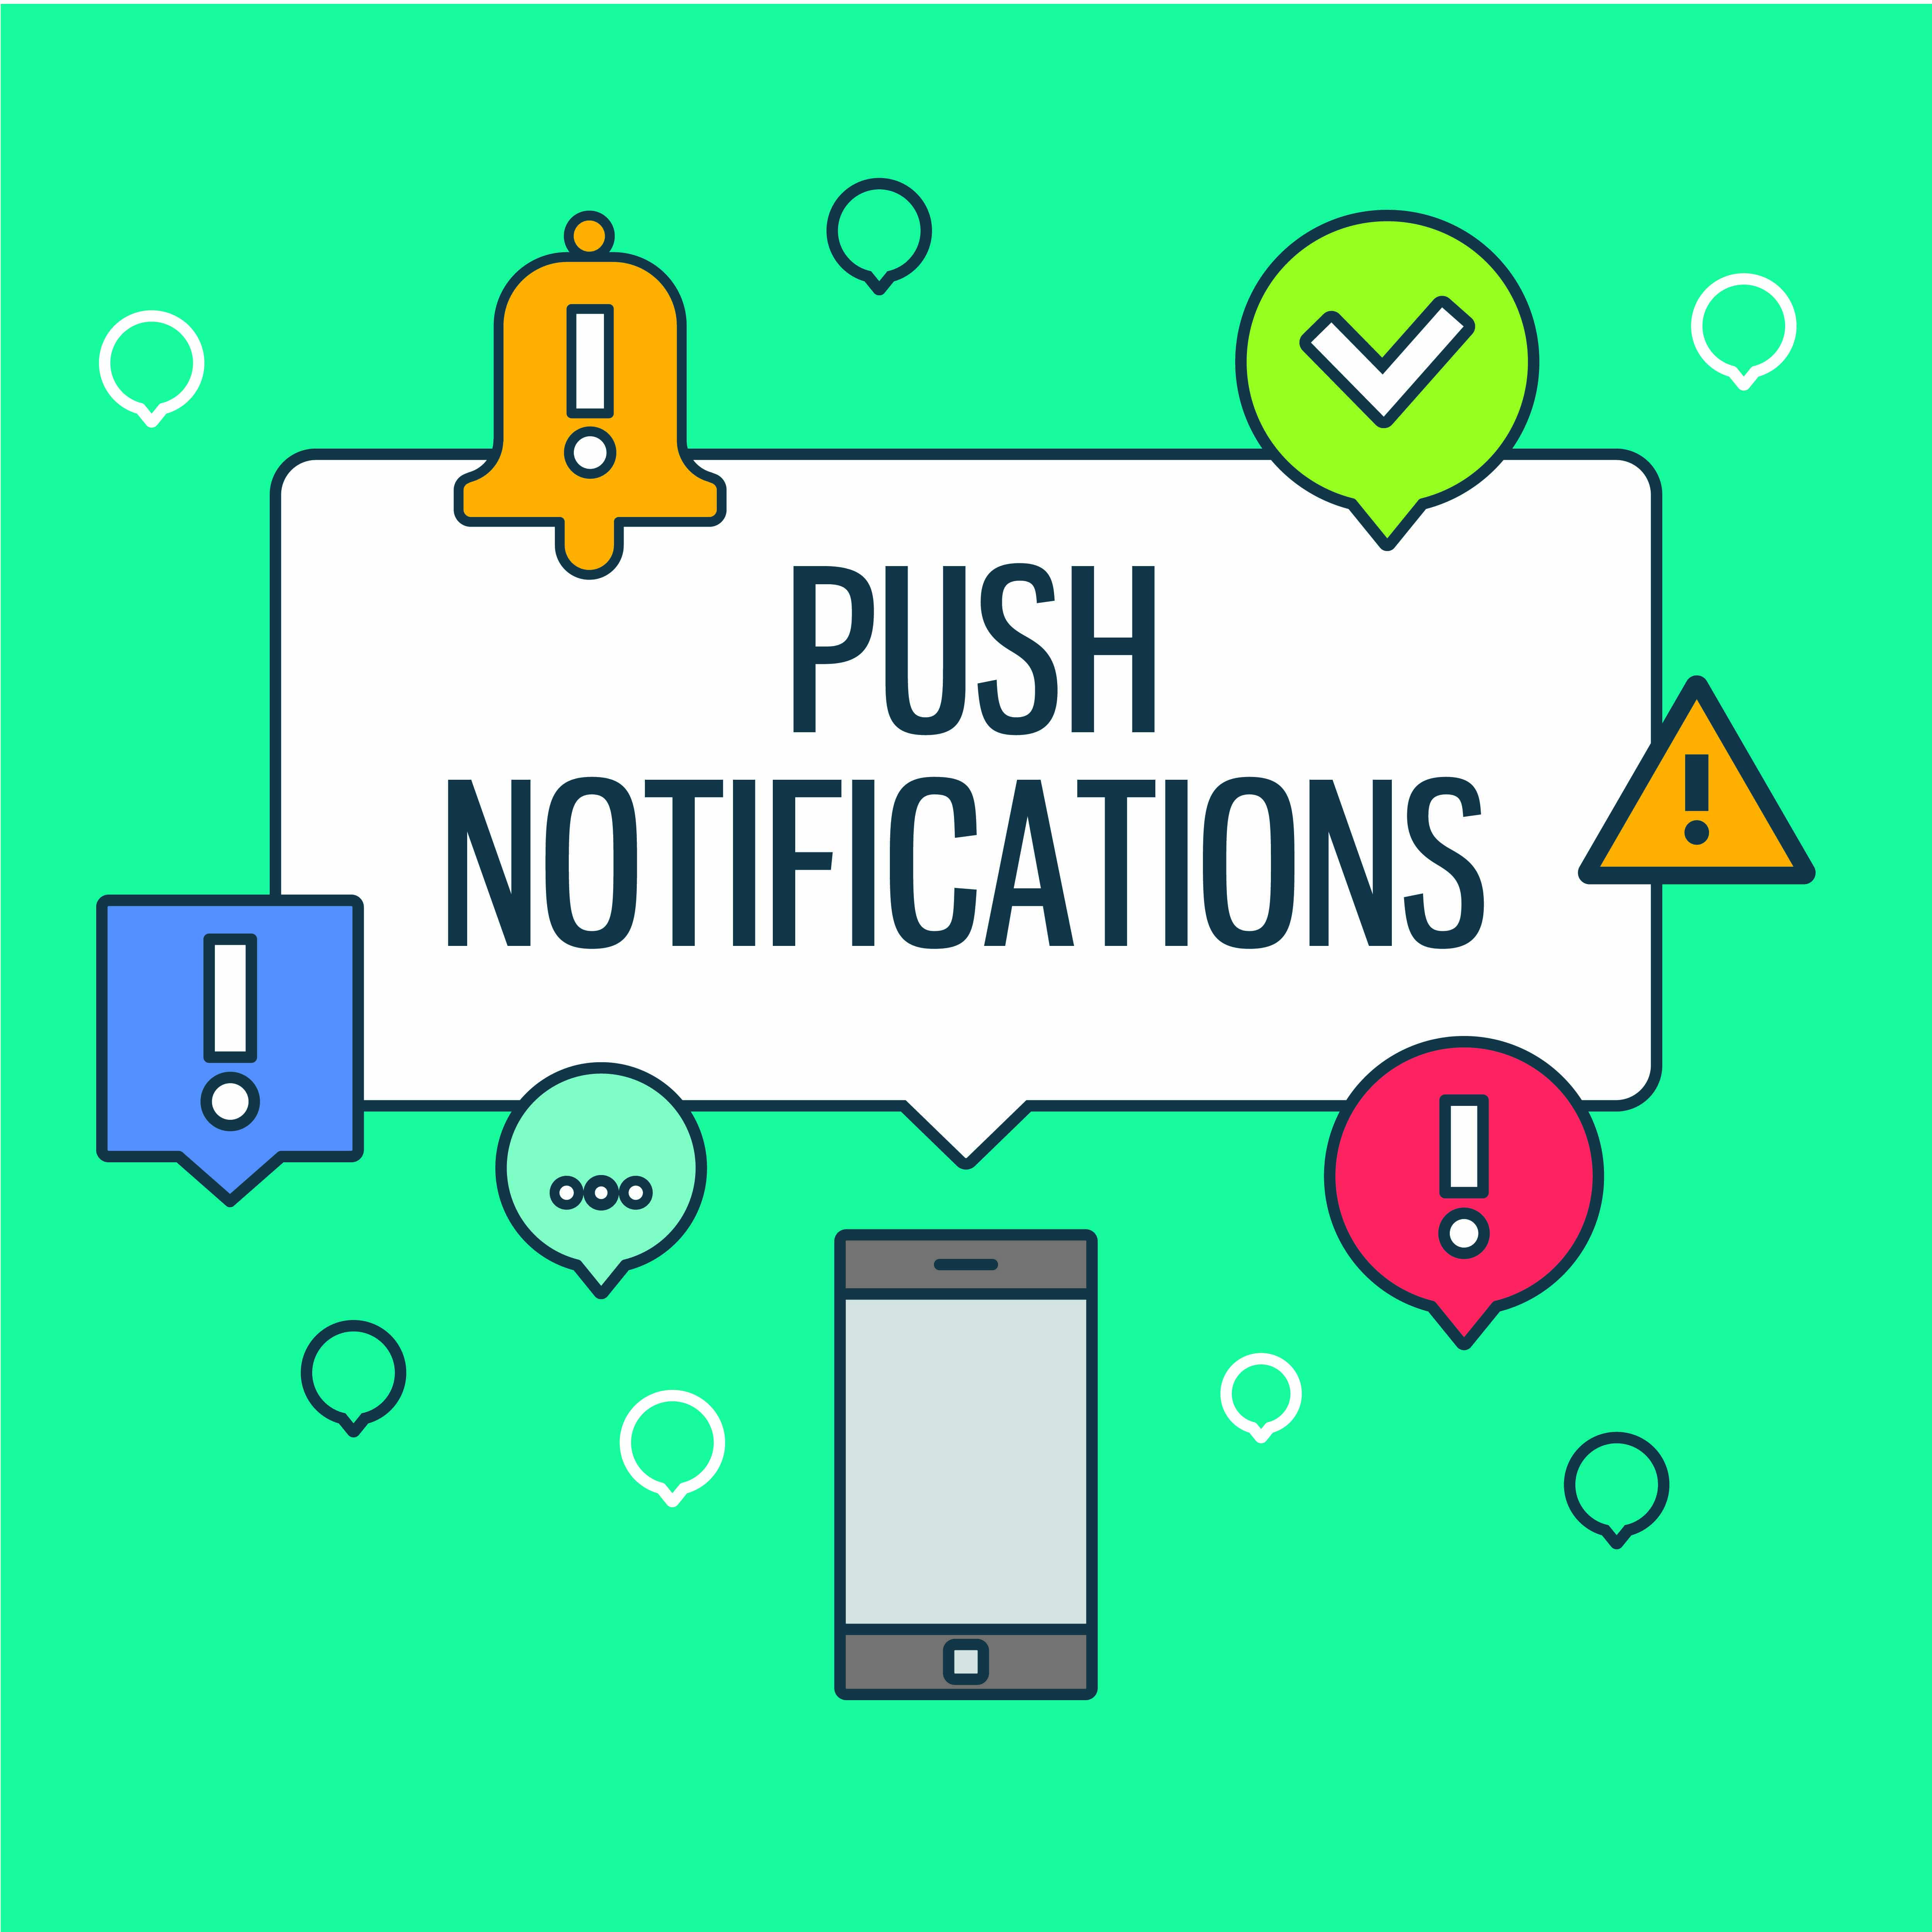 Push notifications - Lad ikke dine push-notifikationer ødelægge koncentrationen